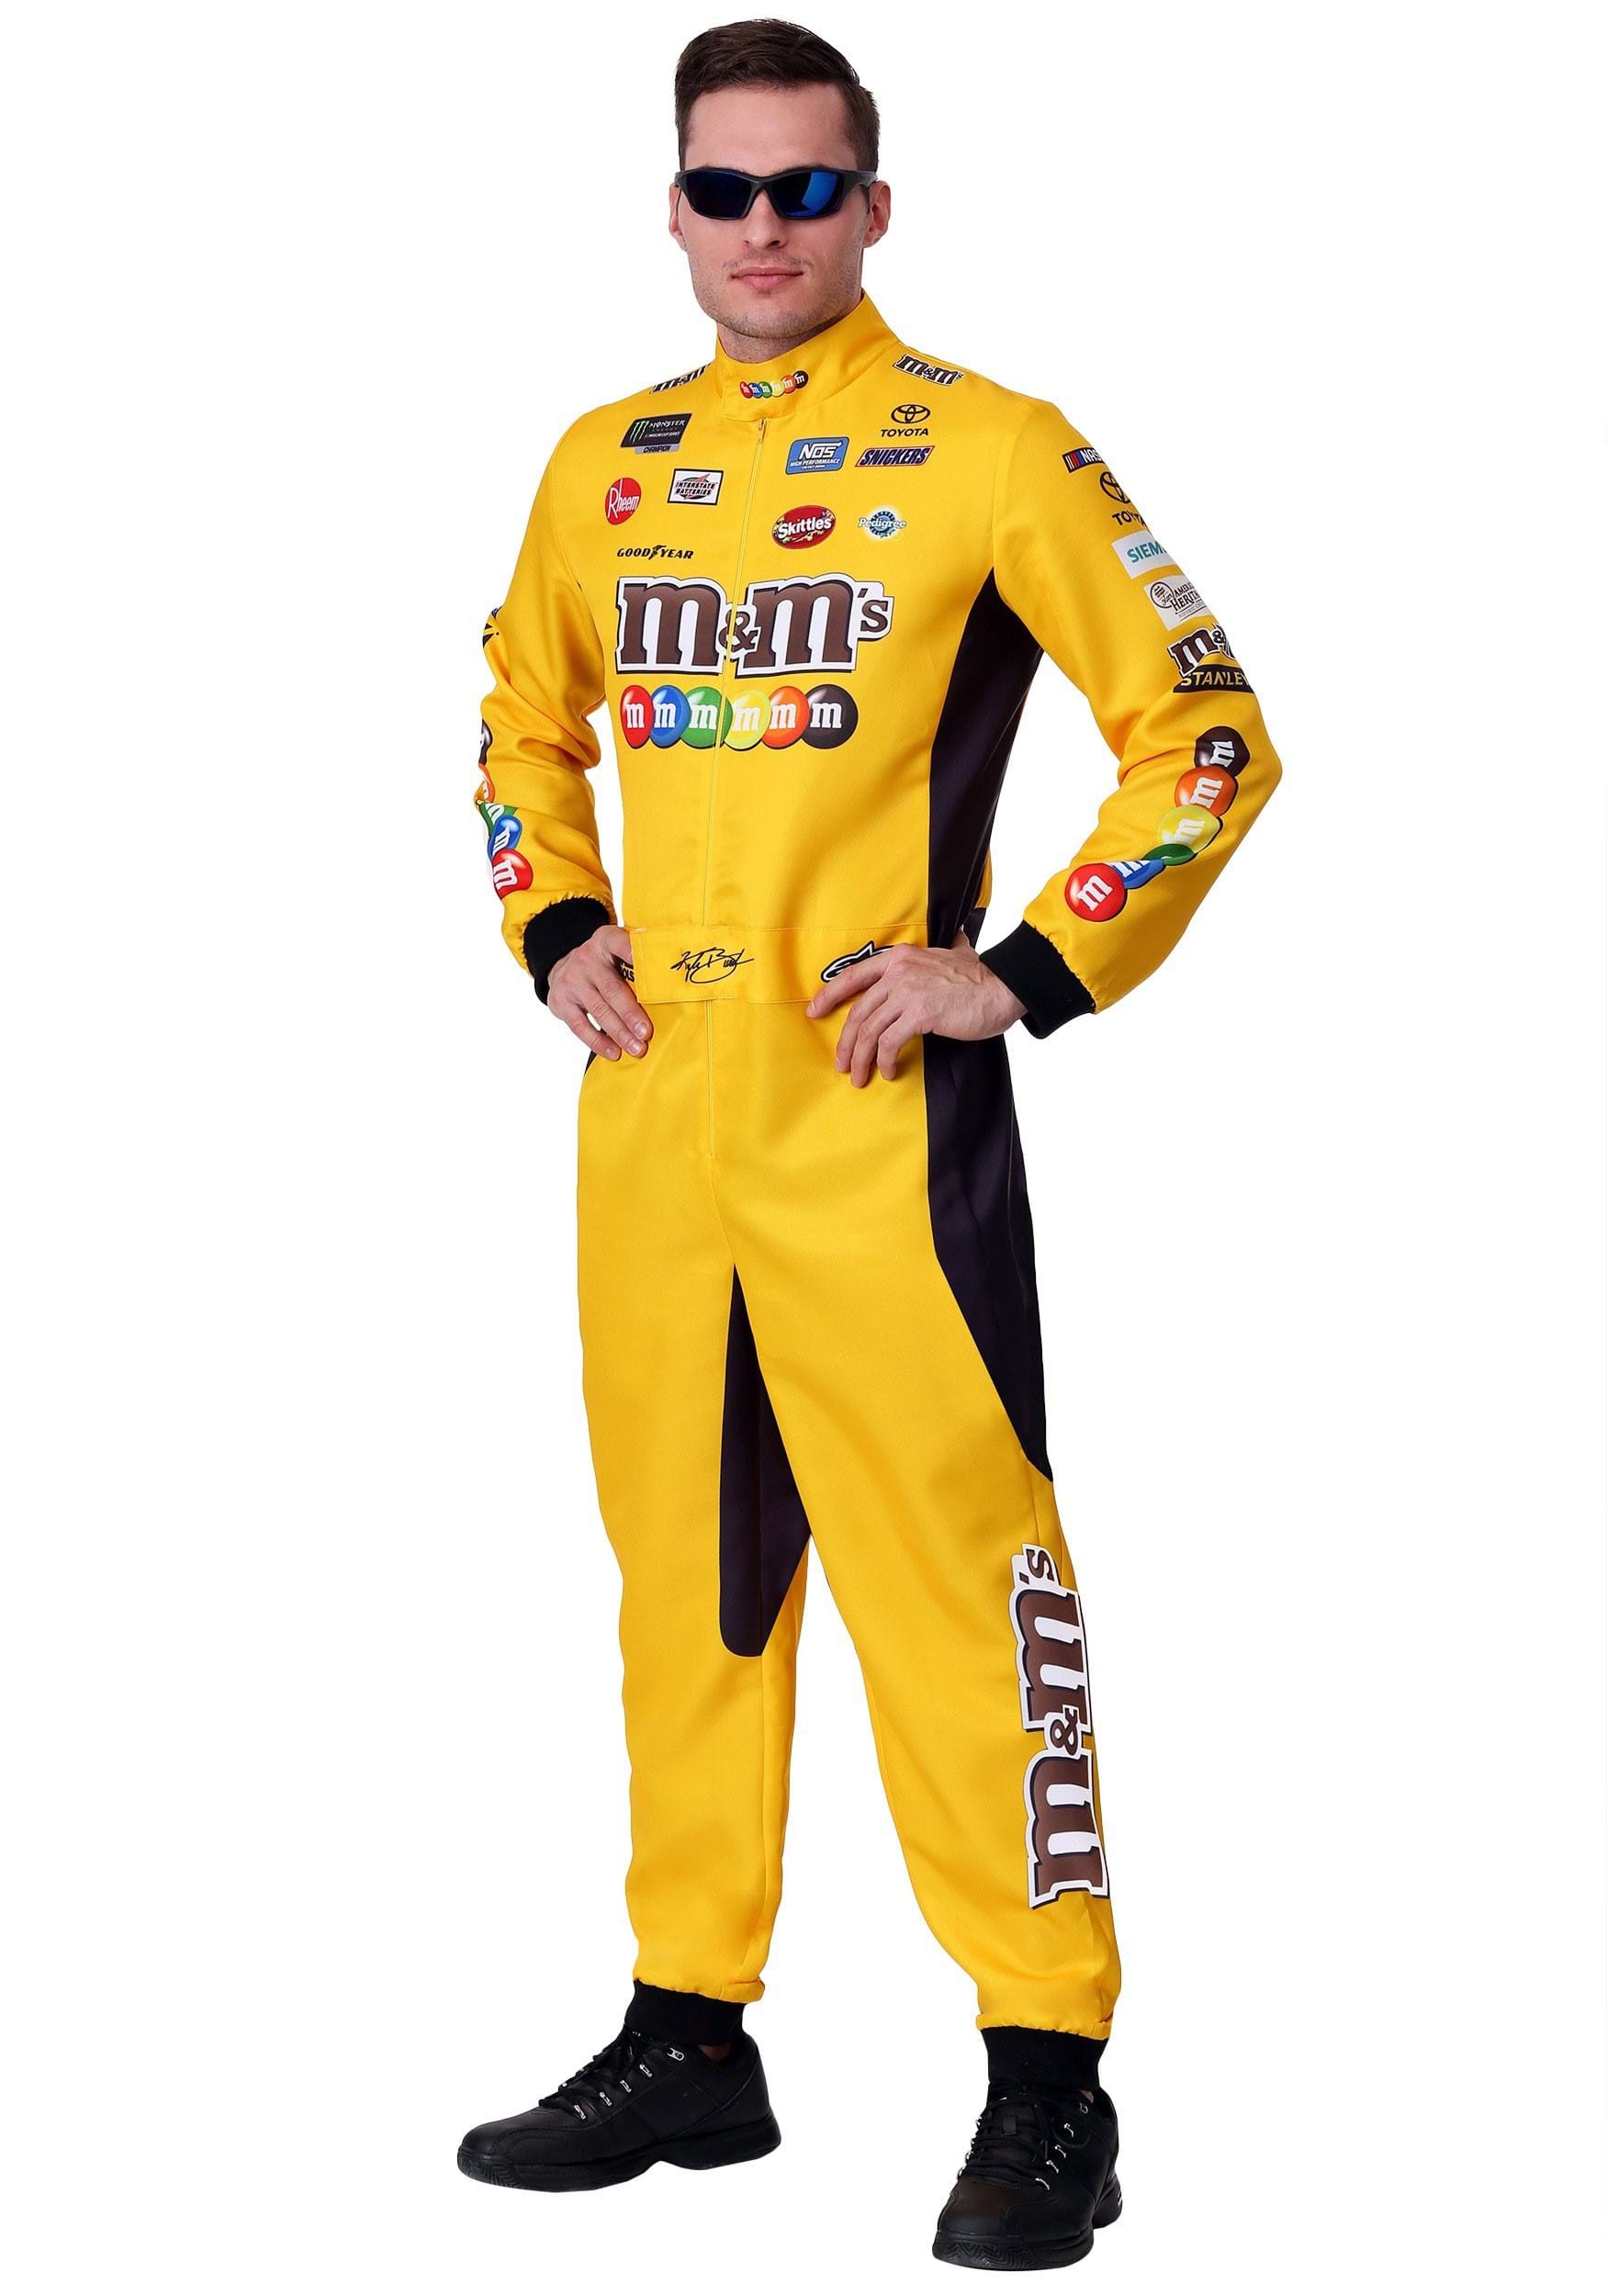 Kyle Busch Plus Size NASCAR Uniform Fancy Dress Costume